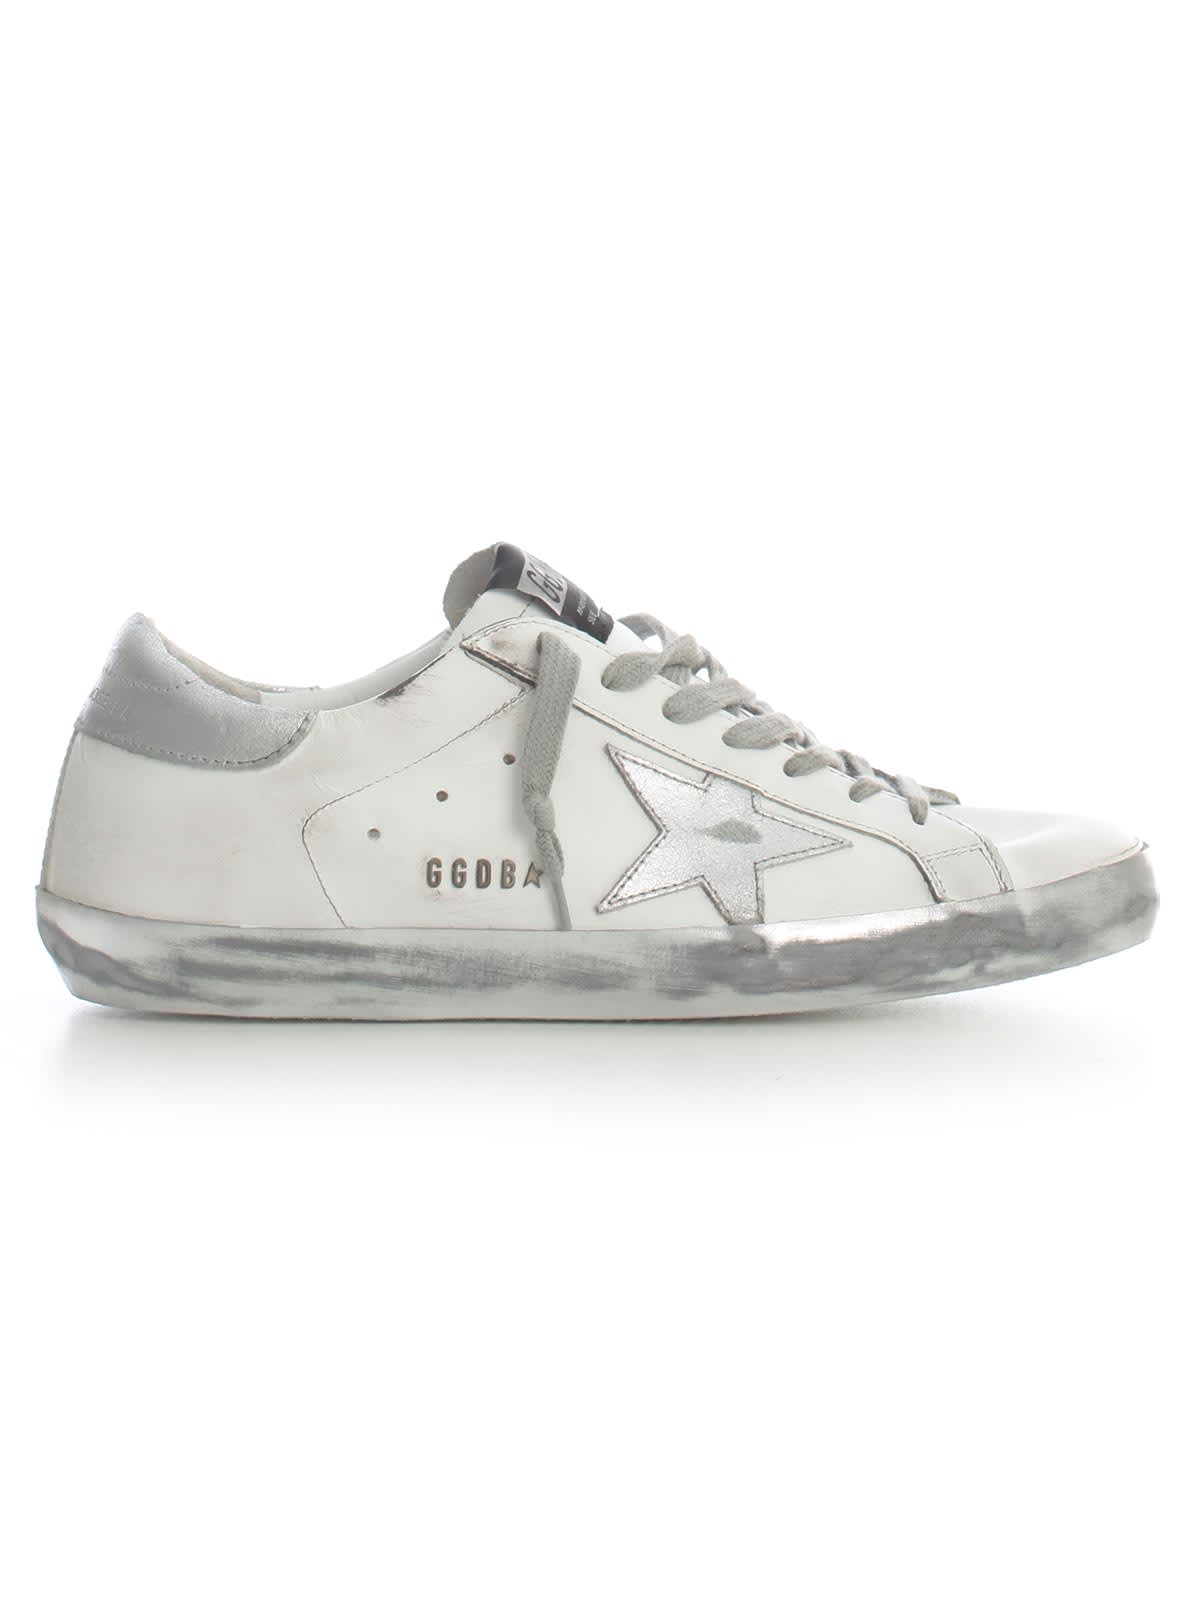 sparkle white sneakers